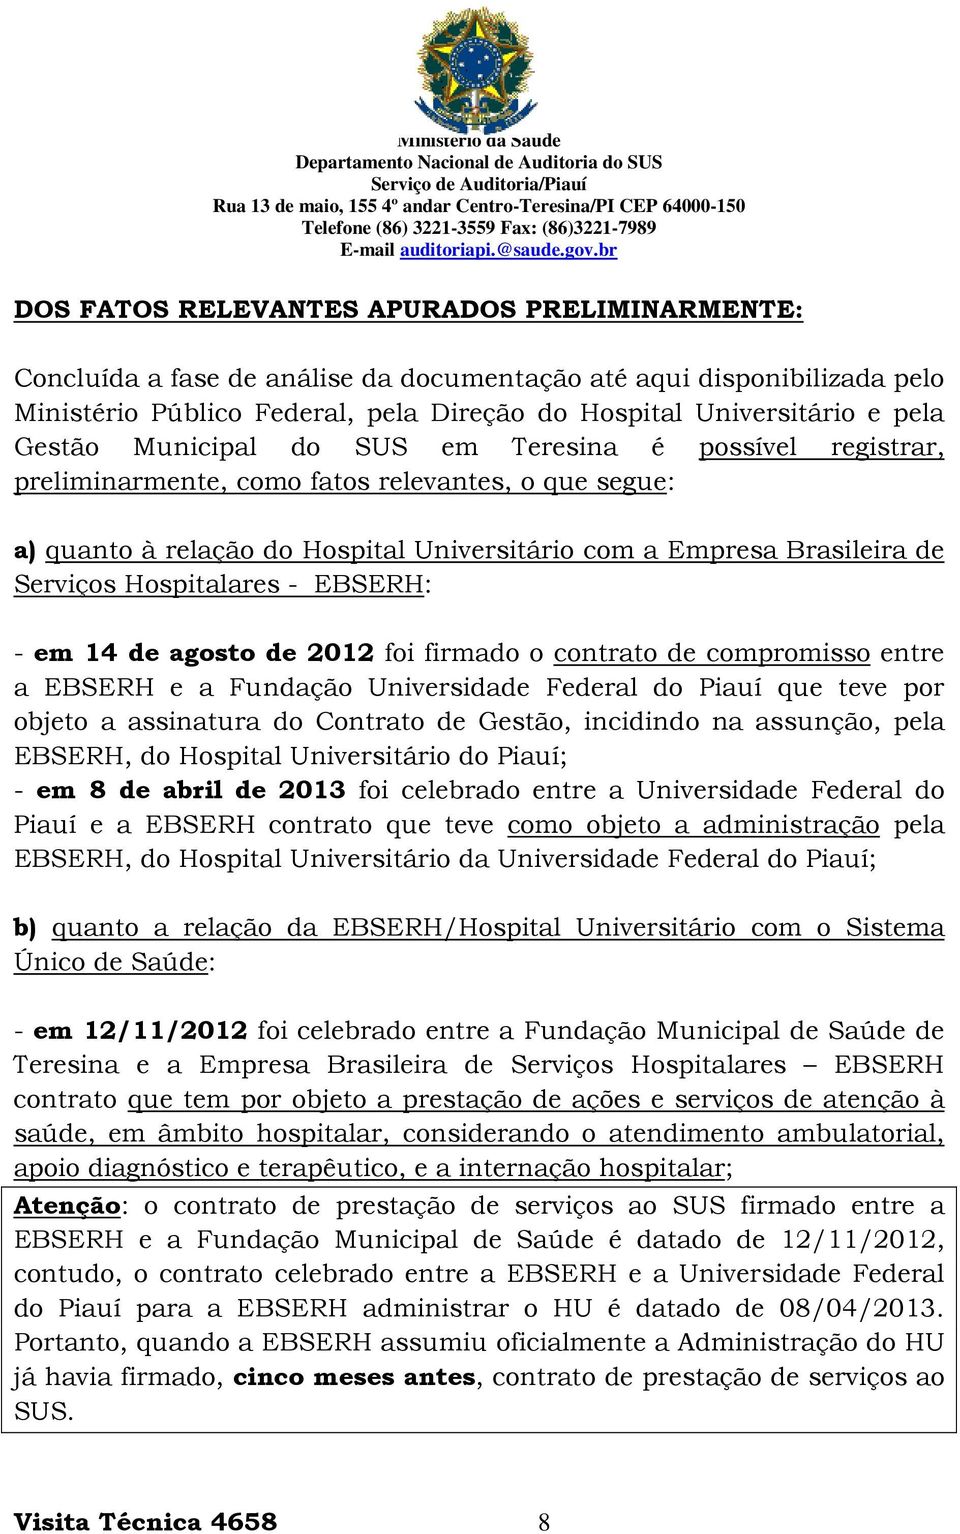 Hospitalares - EBSERH: - em 14 de agosto de 2012 foi firmado o contrato de compromisso entre a EBSERH e a Fundação Universidade Federal do Piauí que teve por objeto a assinatura do Contrato de